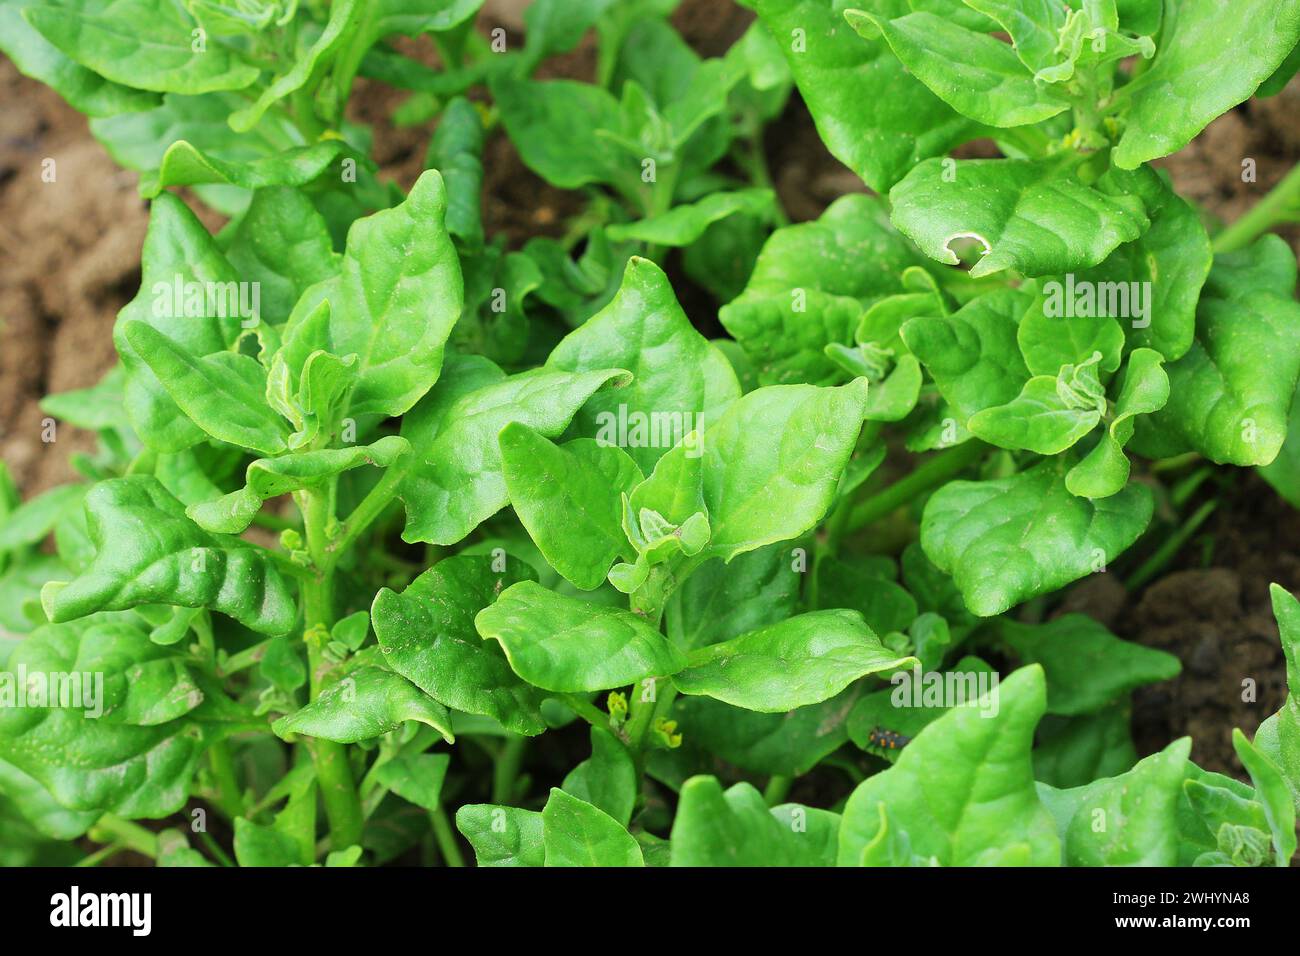 Tetragonia tetragonioides, New Zealand spinach growing in garden Stock Photo